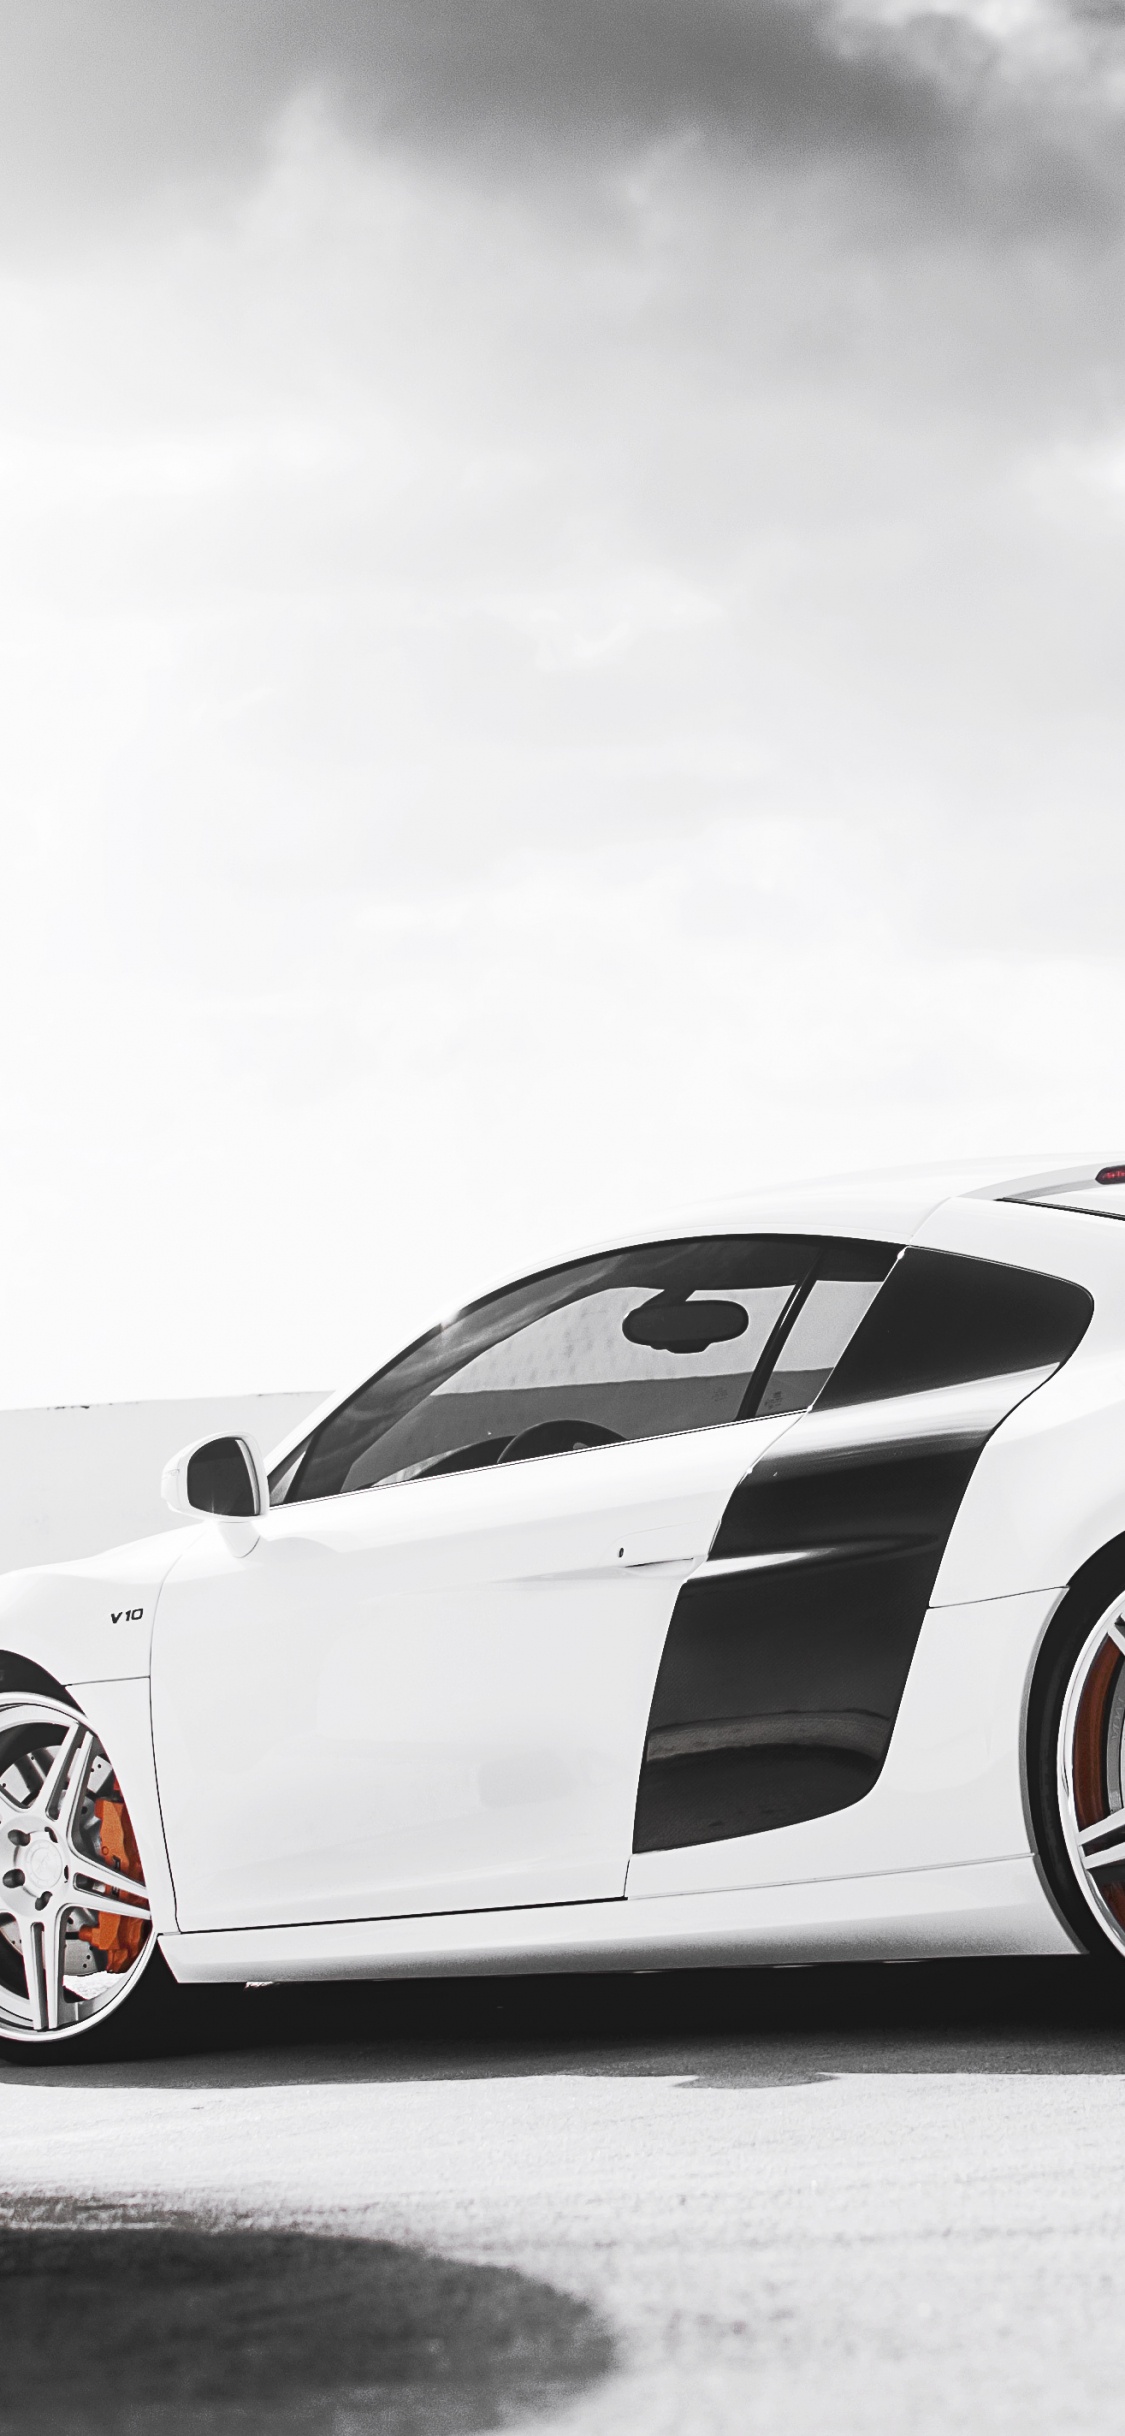 White Porsche 911 on Black Surface. Wallpaper in 1125x2436 Resolution